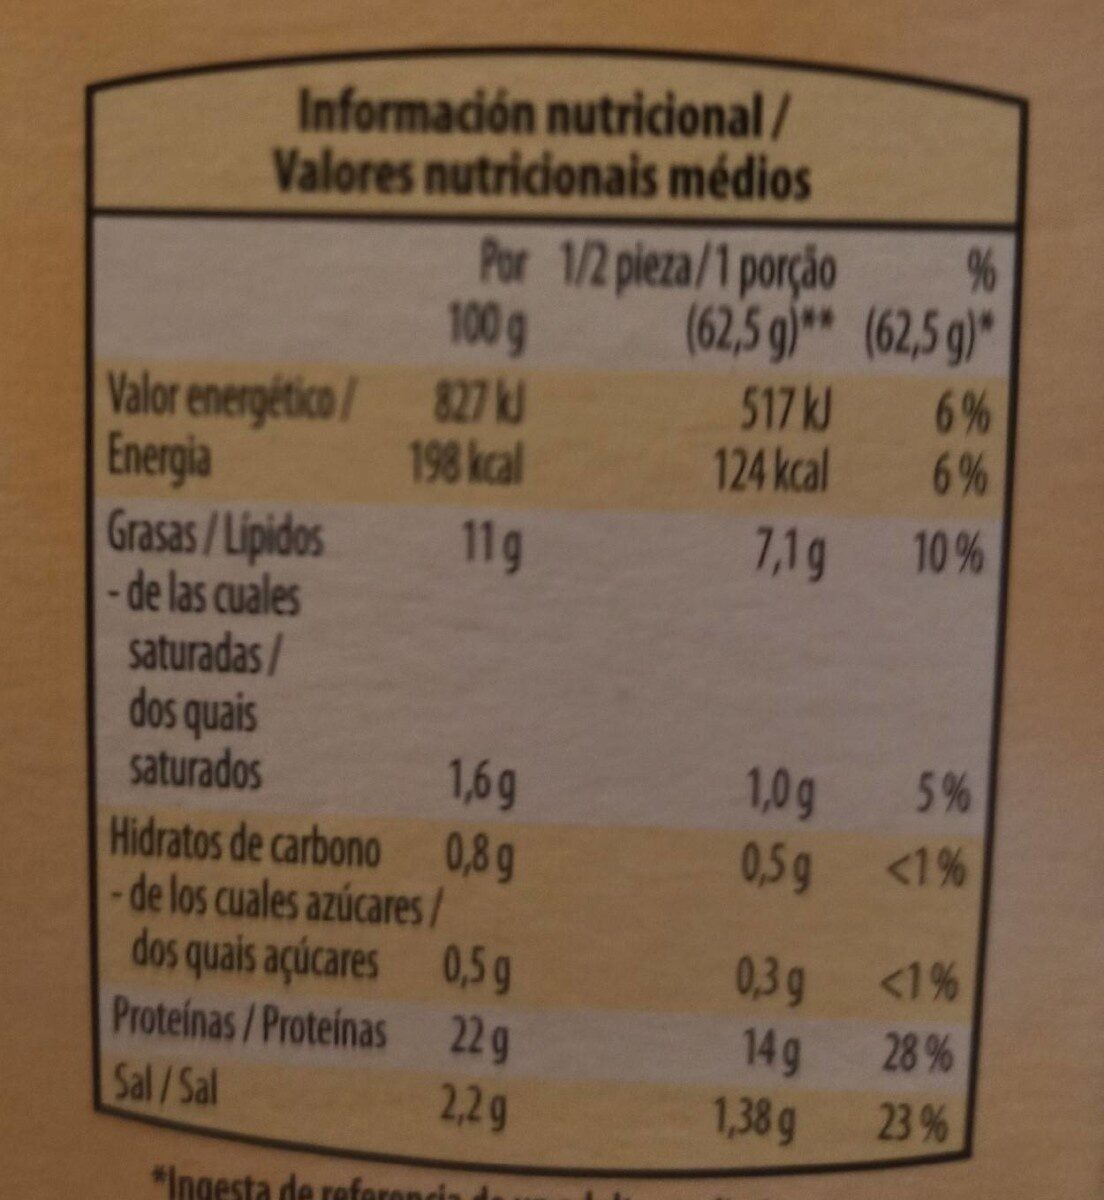 Tofu ahumado - Informació nutricional - es